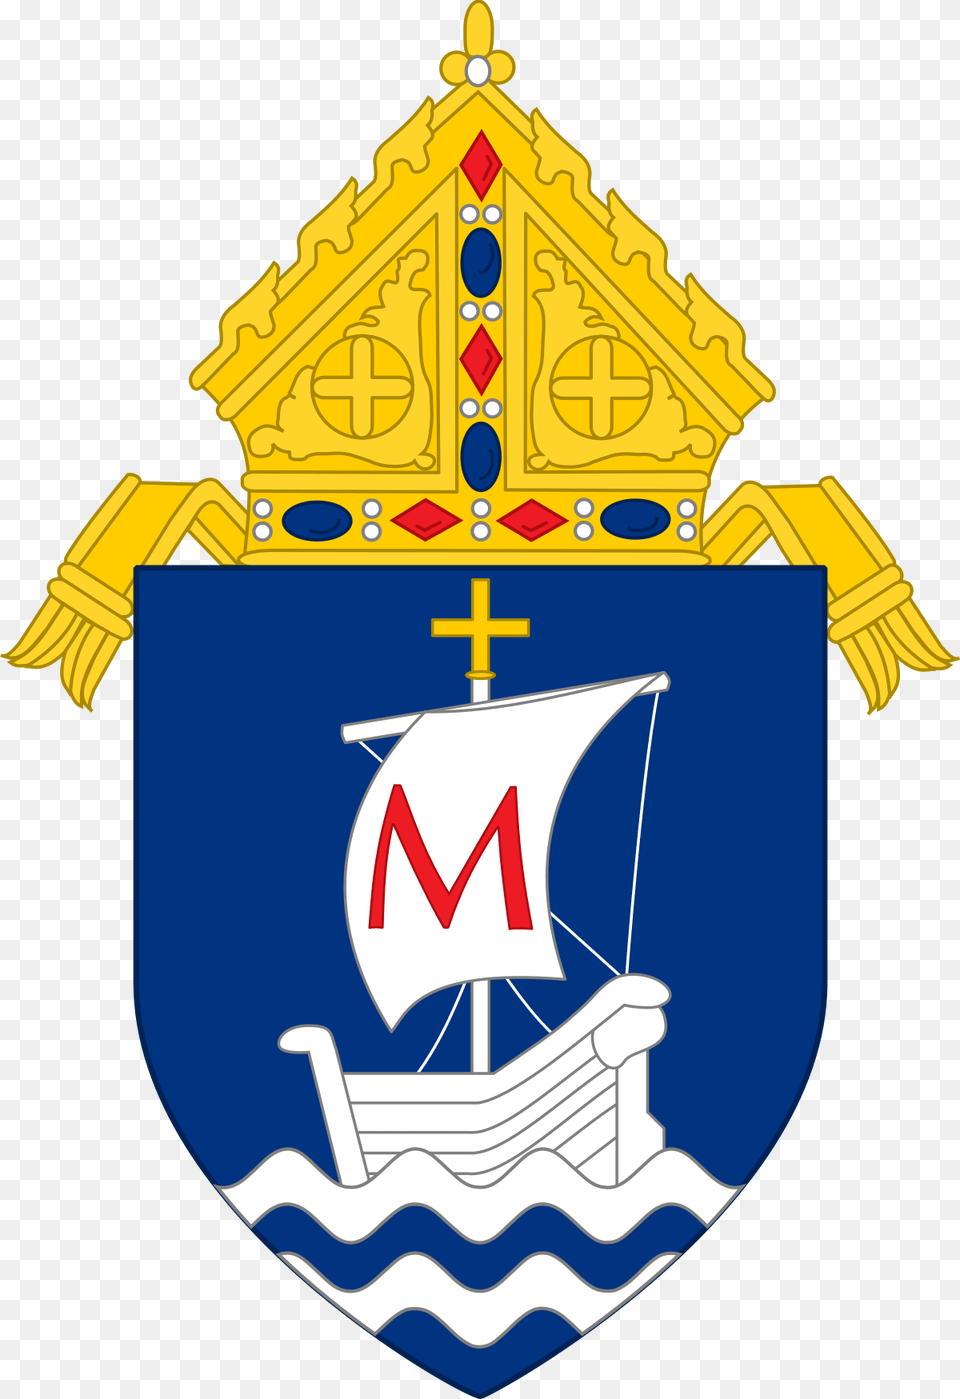 Roman Catholic Crest, Bulldozer, Machine, Logo Png Image